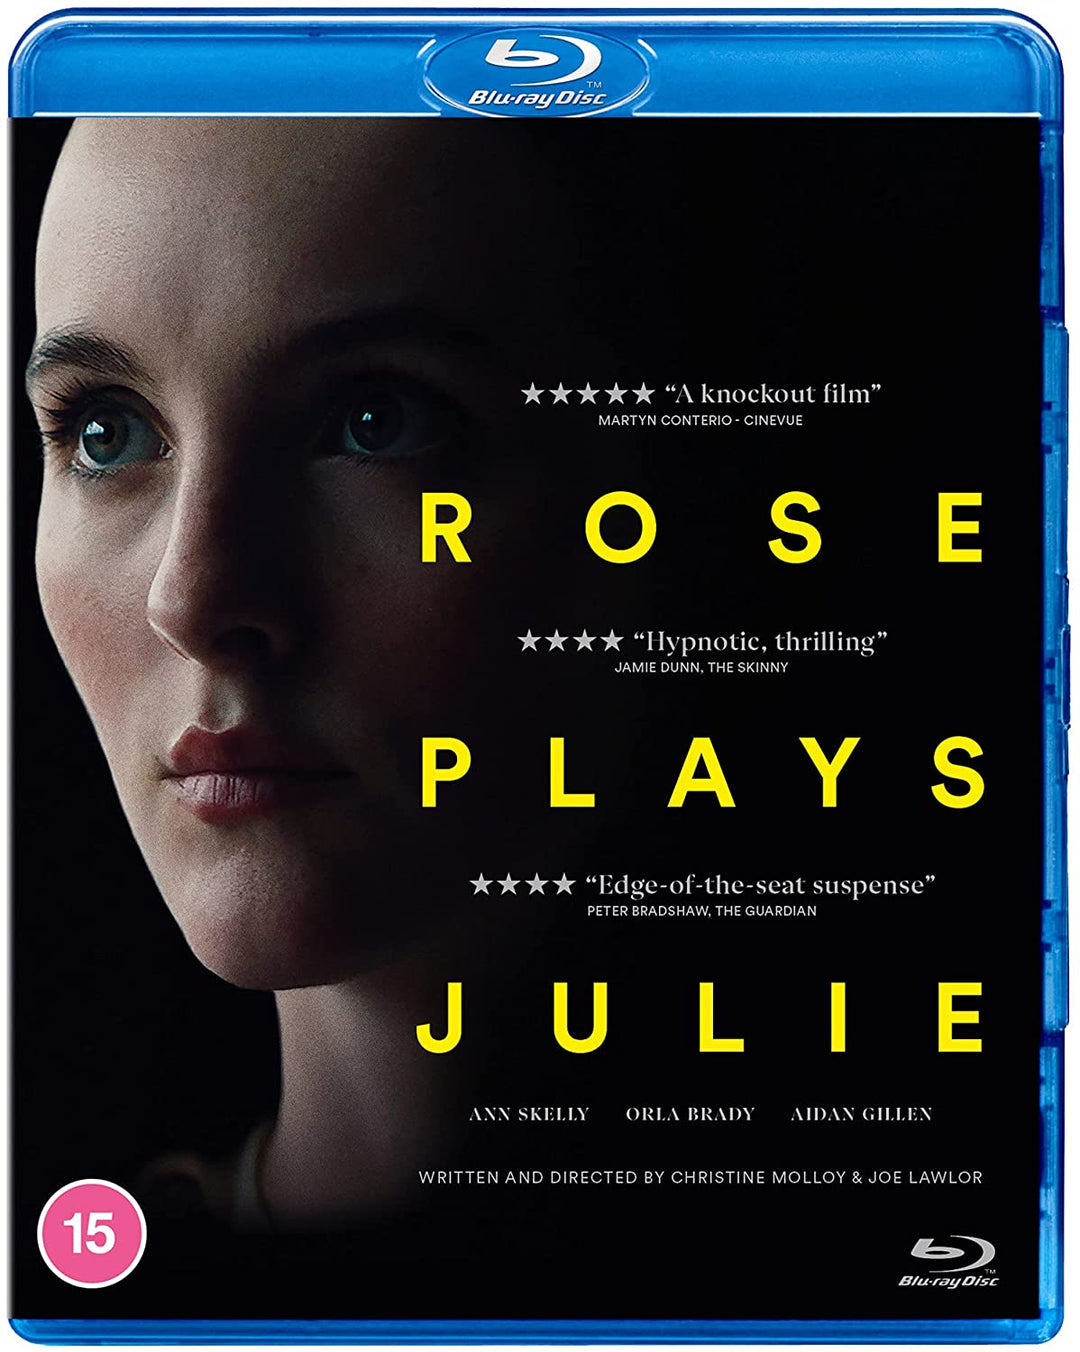 Rose spielt Julie – Drama/Thriller [Blu-ray]